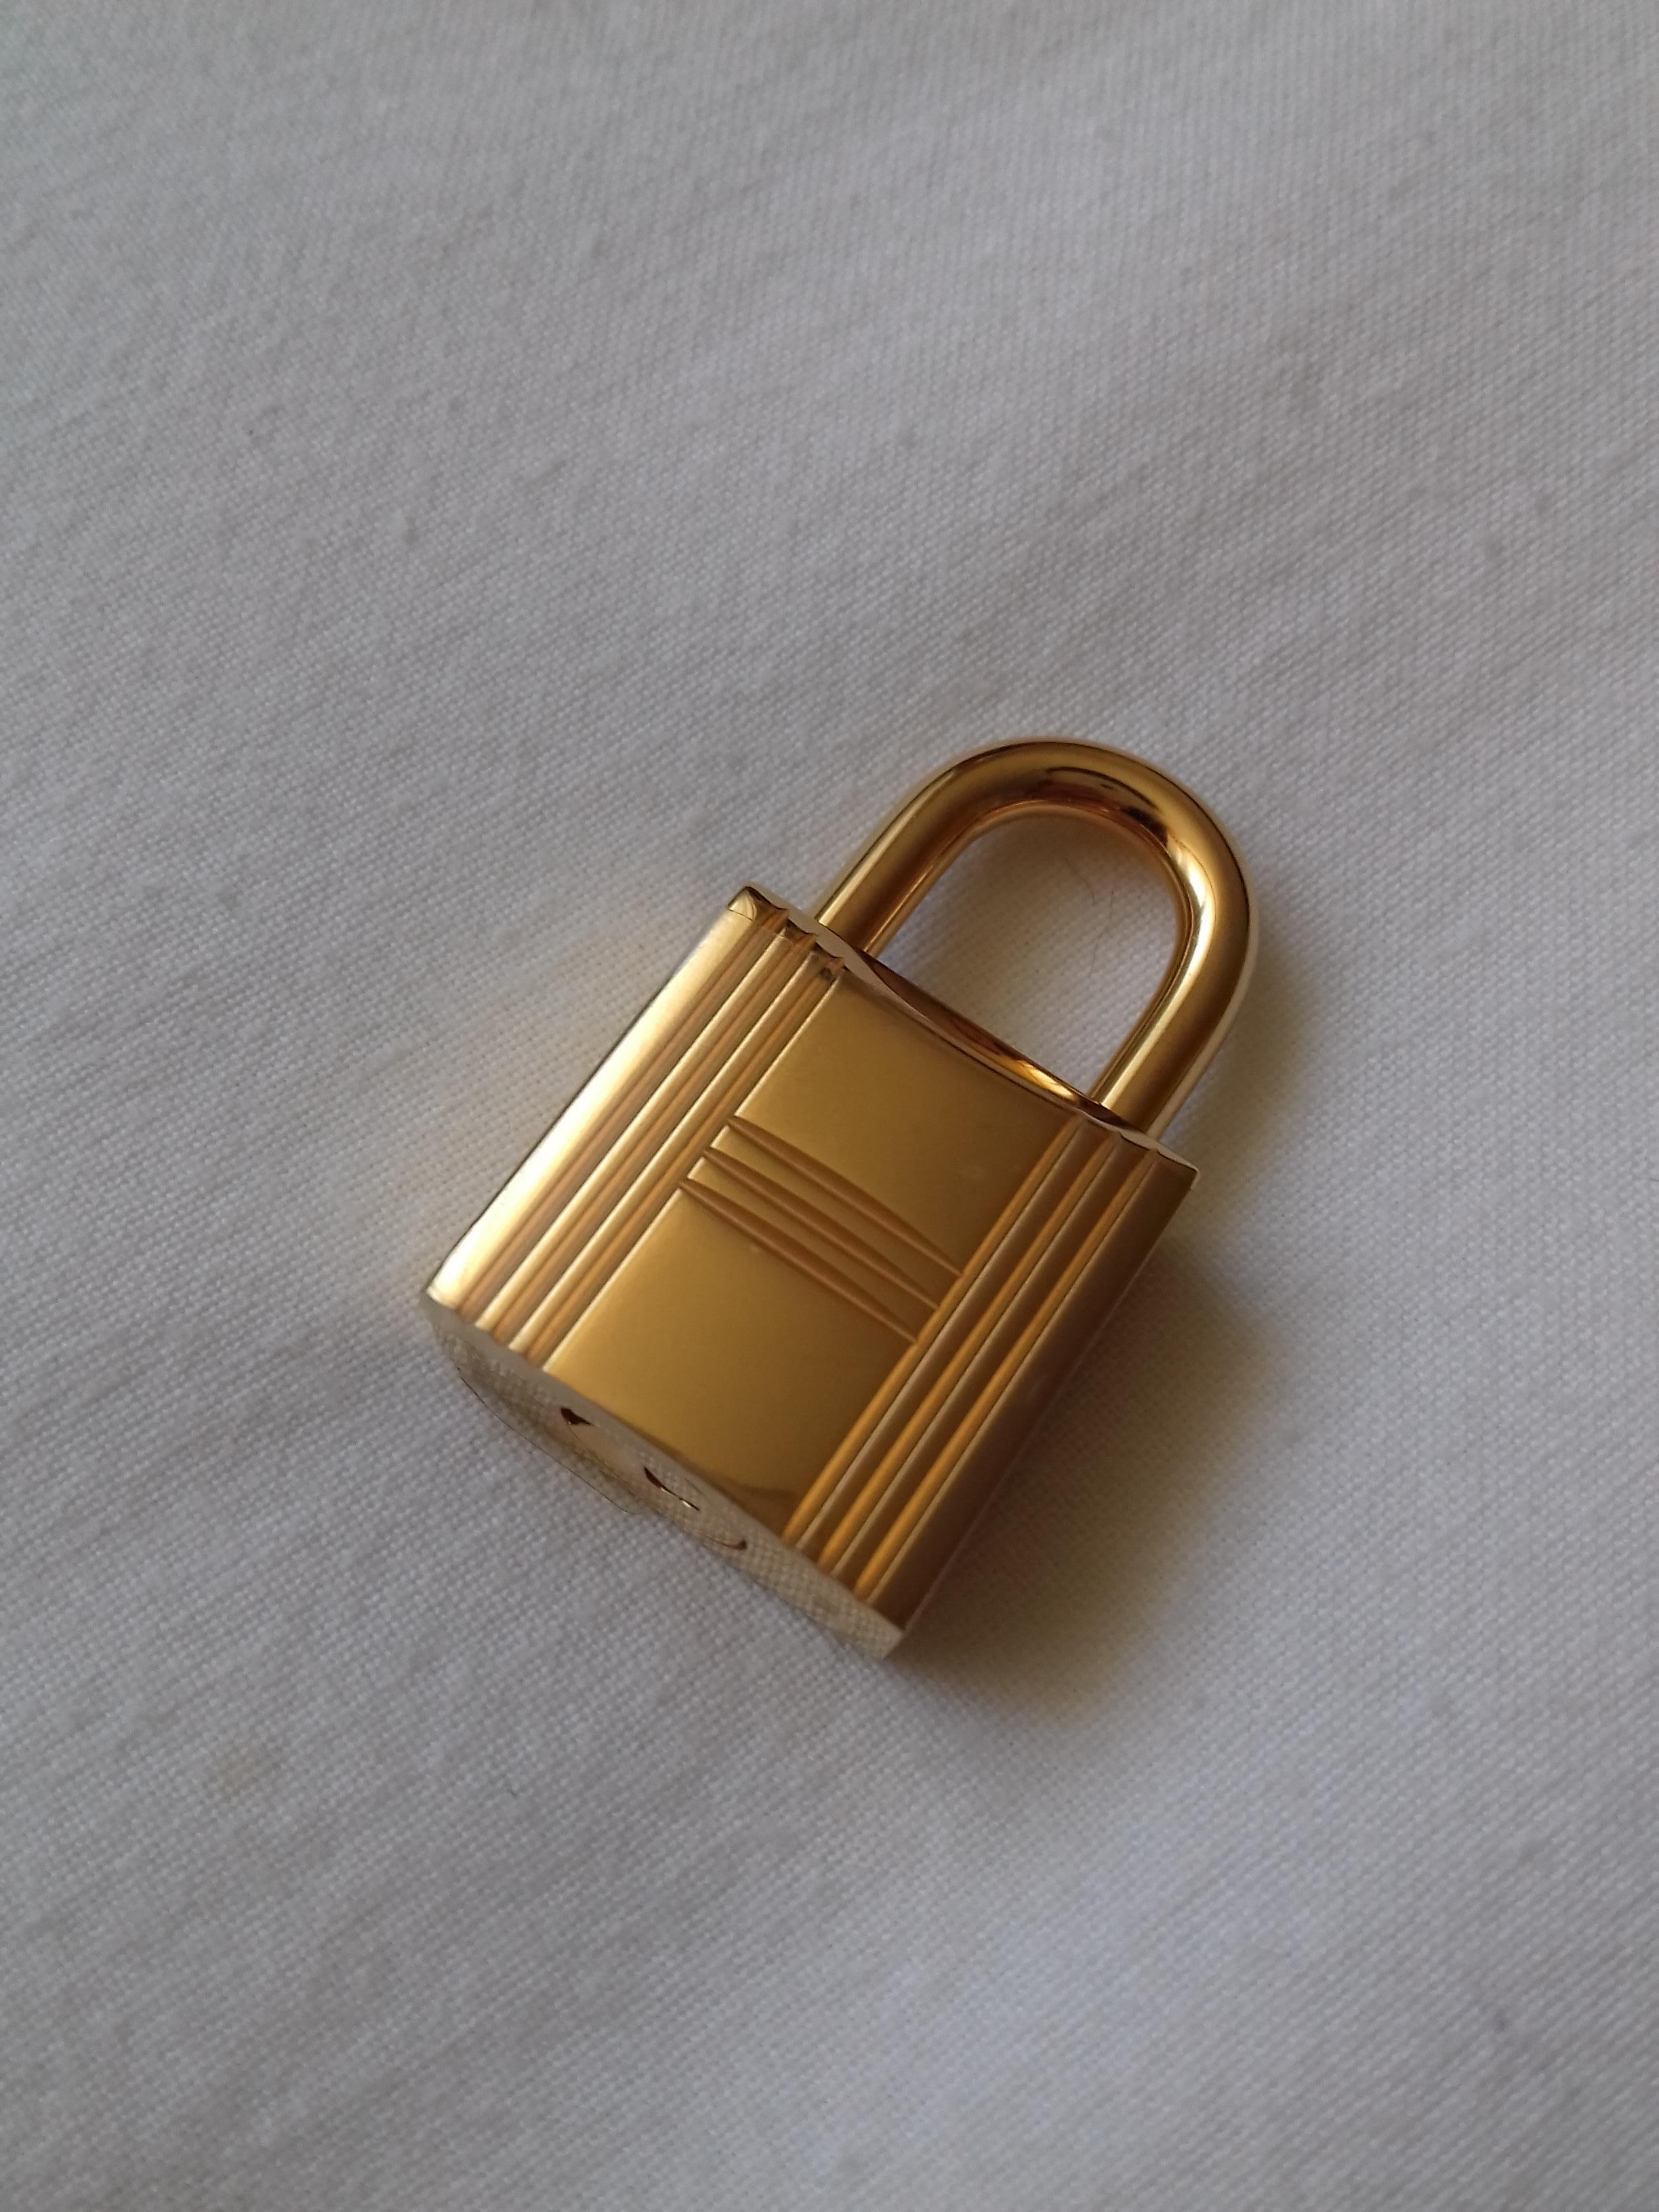 Brown Hermès Gold Clemence Leather Clochette Tirette Golden Lock Keys for Kelly Birkin